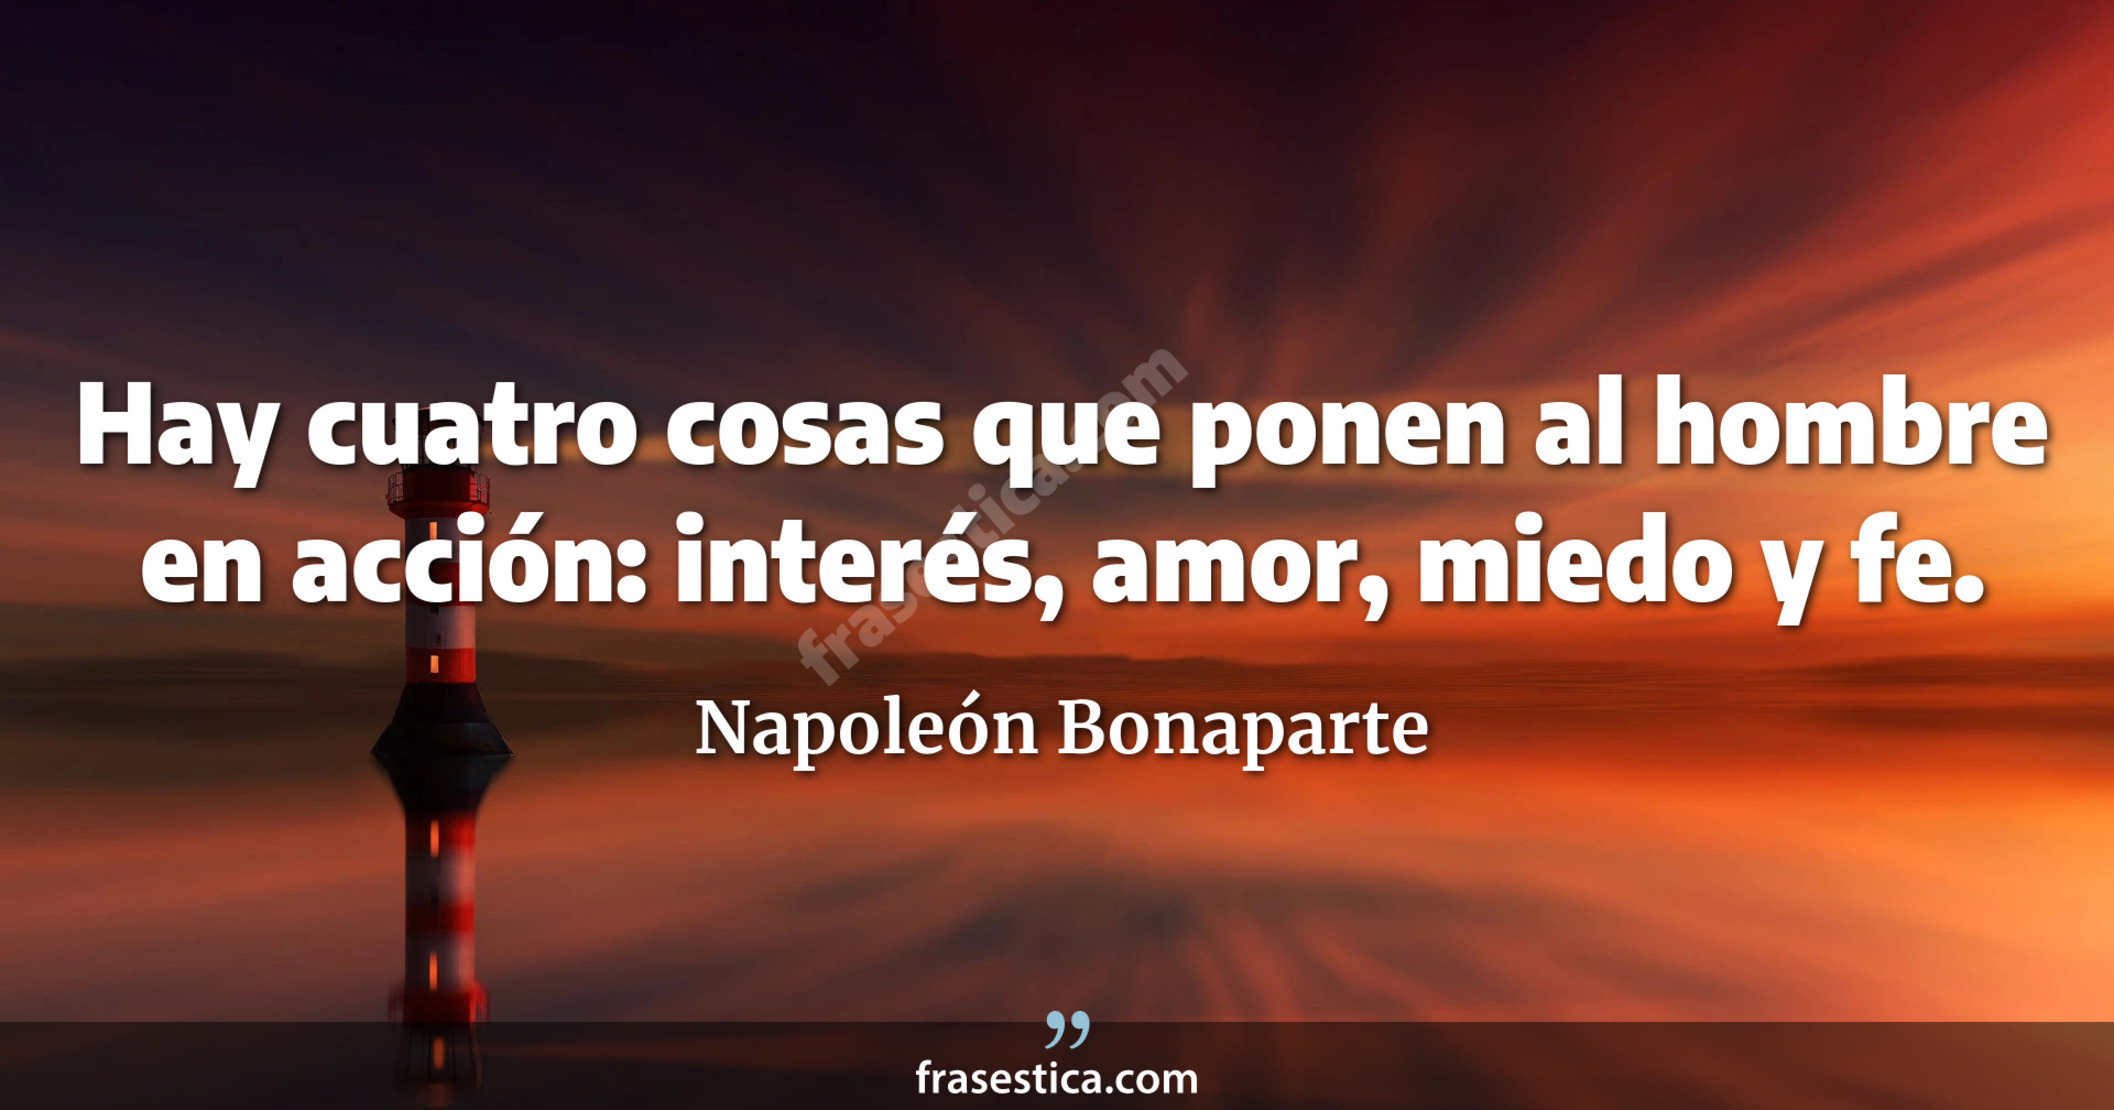 Hay cuatro cosas que ponen al hombre en acción: interés, amor, miedo y fe. - Napoleón Bonaparte